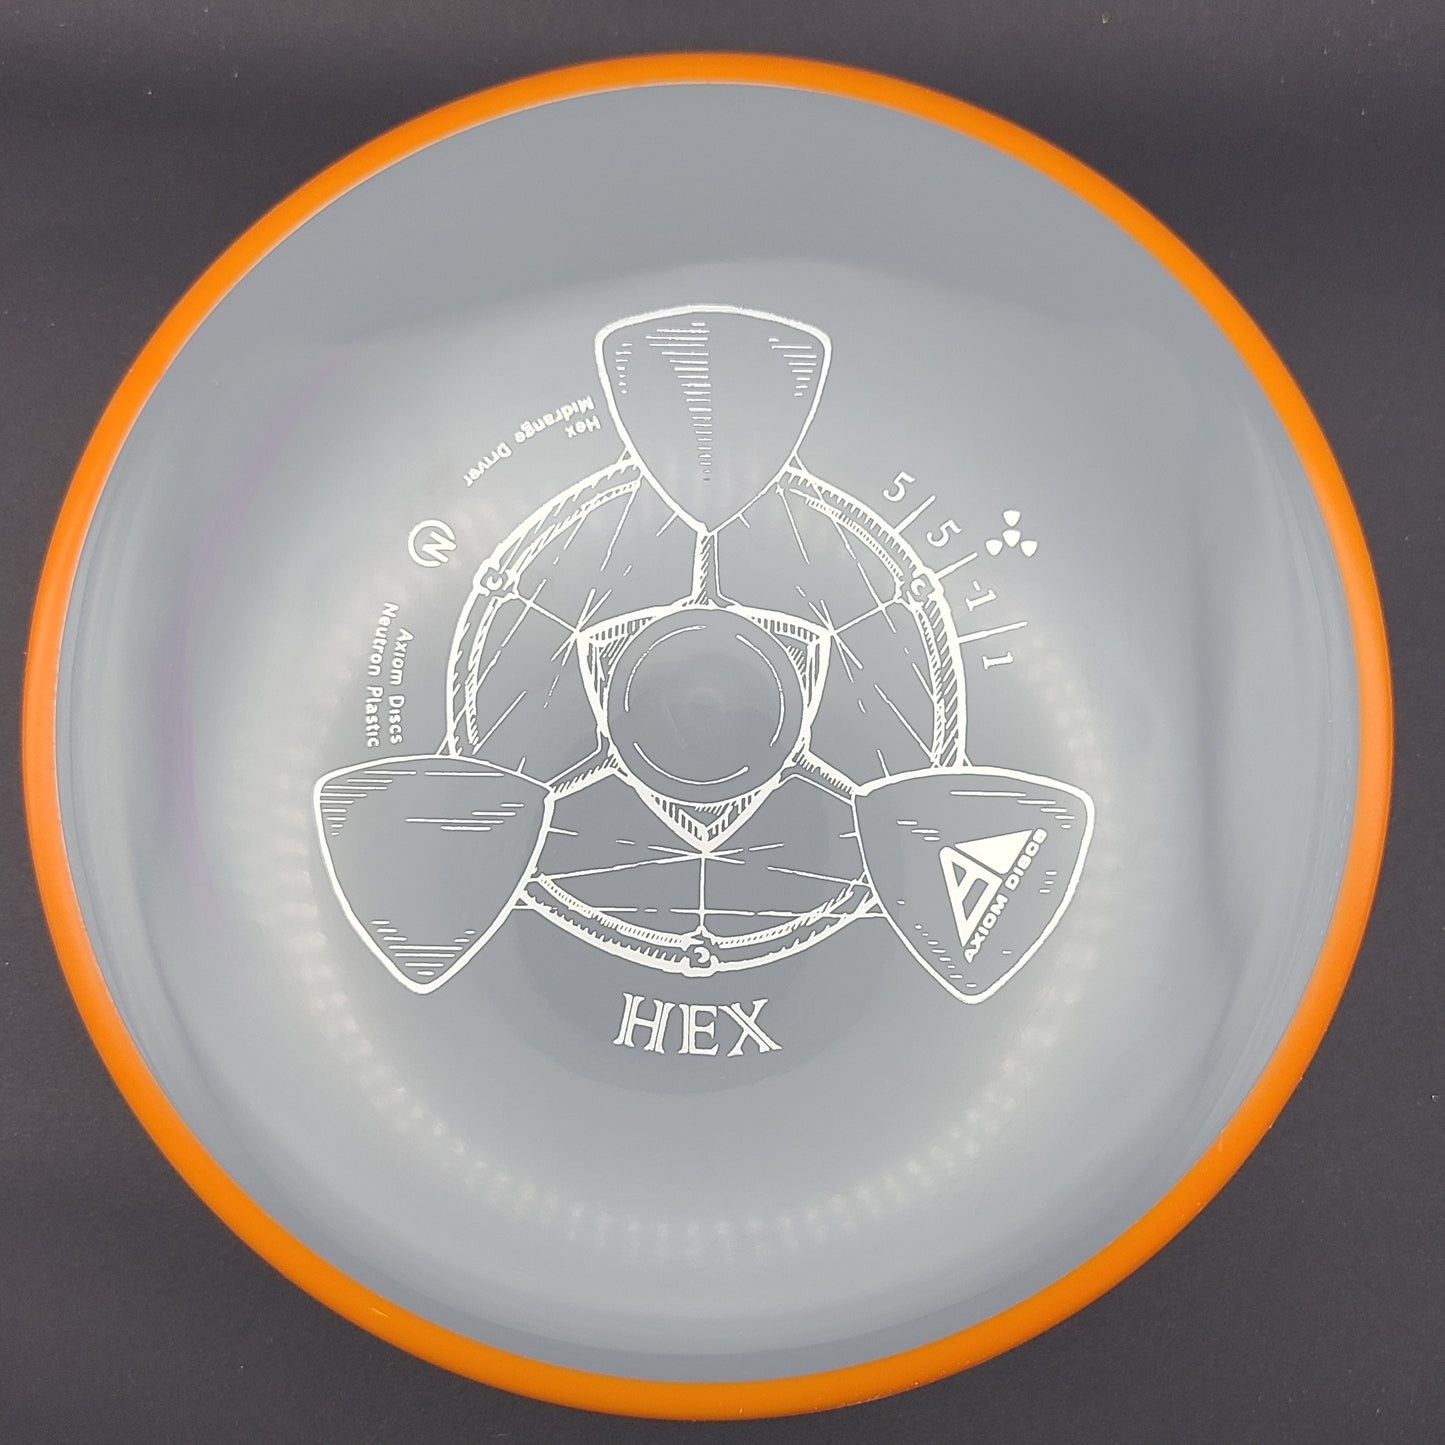 Axiom - Hex - Neutron